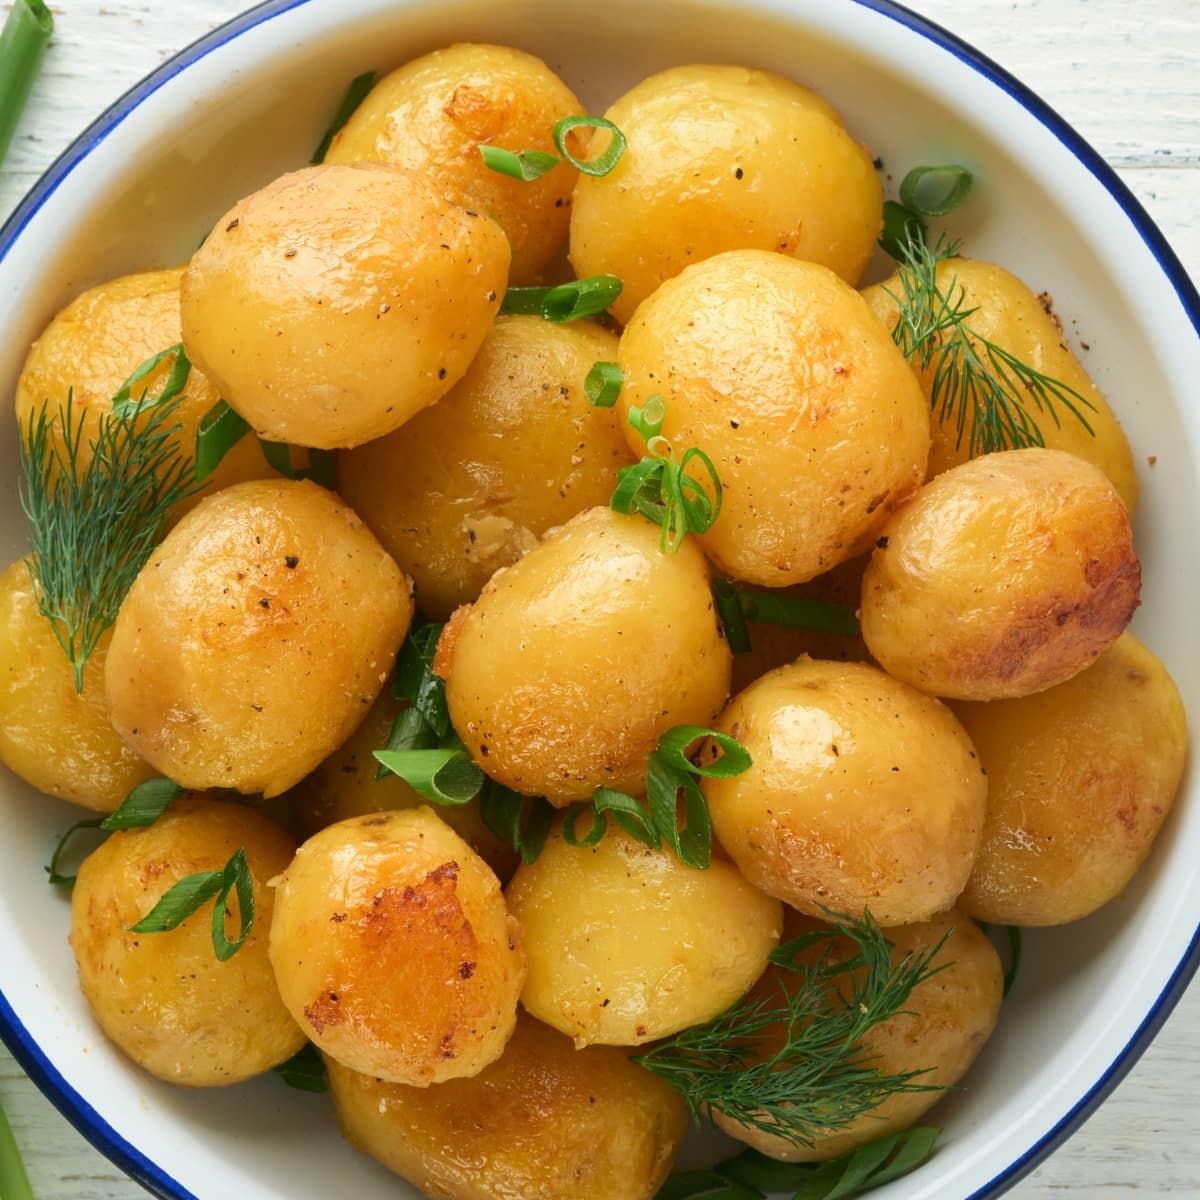 Syracuse Salt Potatoes on a  Bowl With Herbs